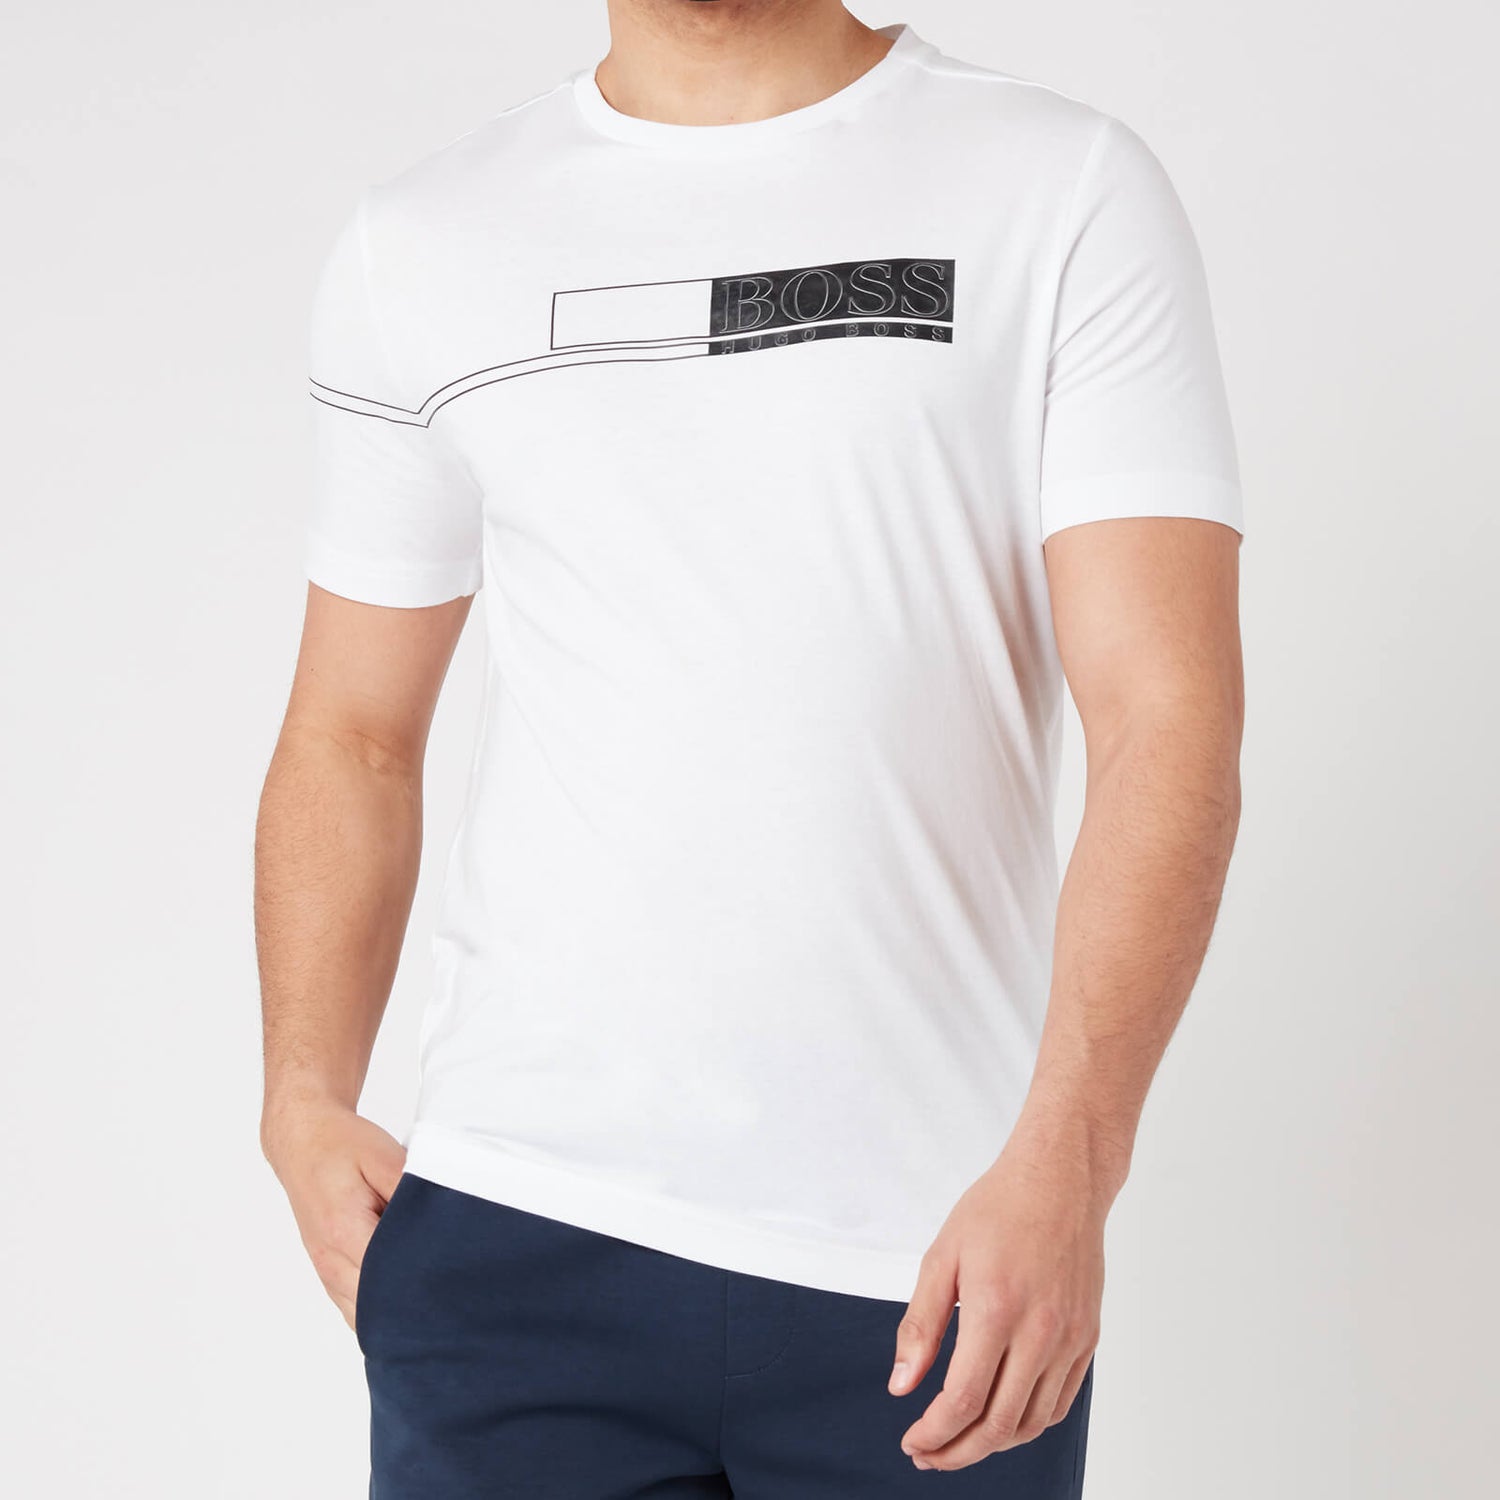 BOSS Athleisure Men's Tee 1 T-Shirt - White